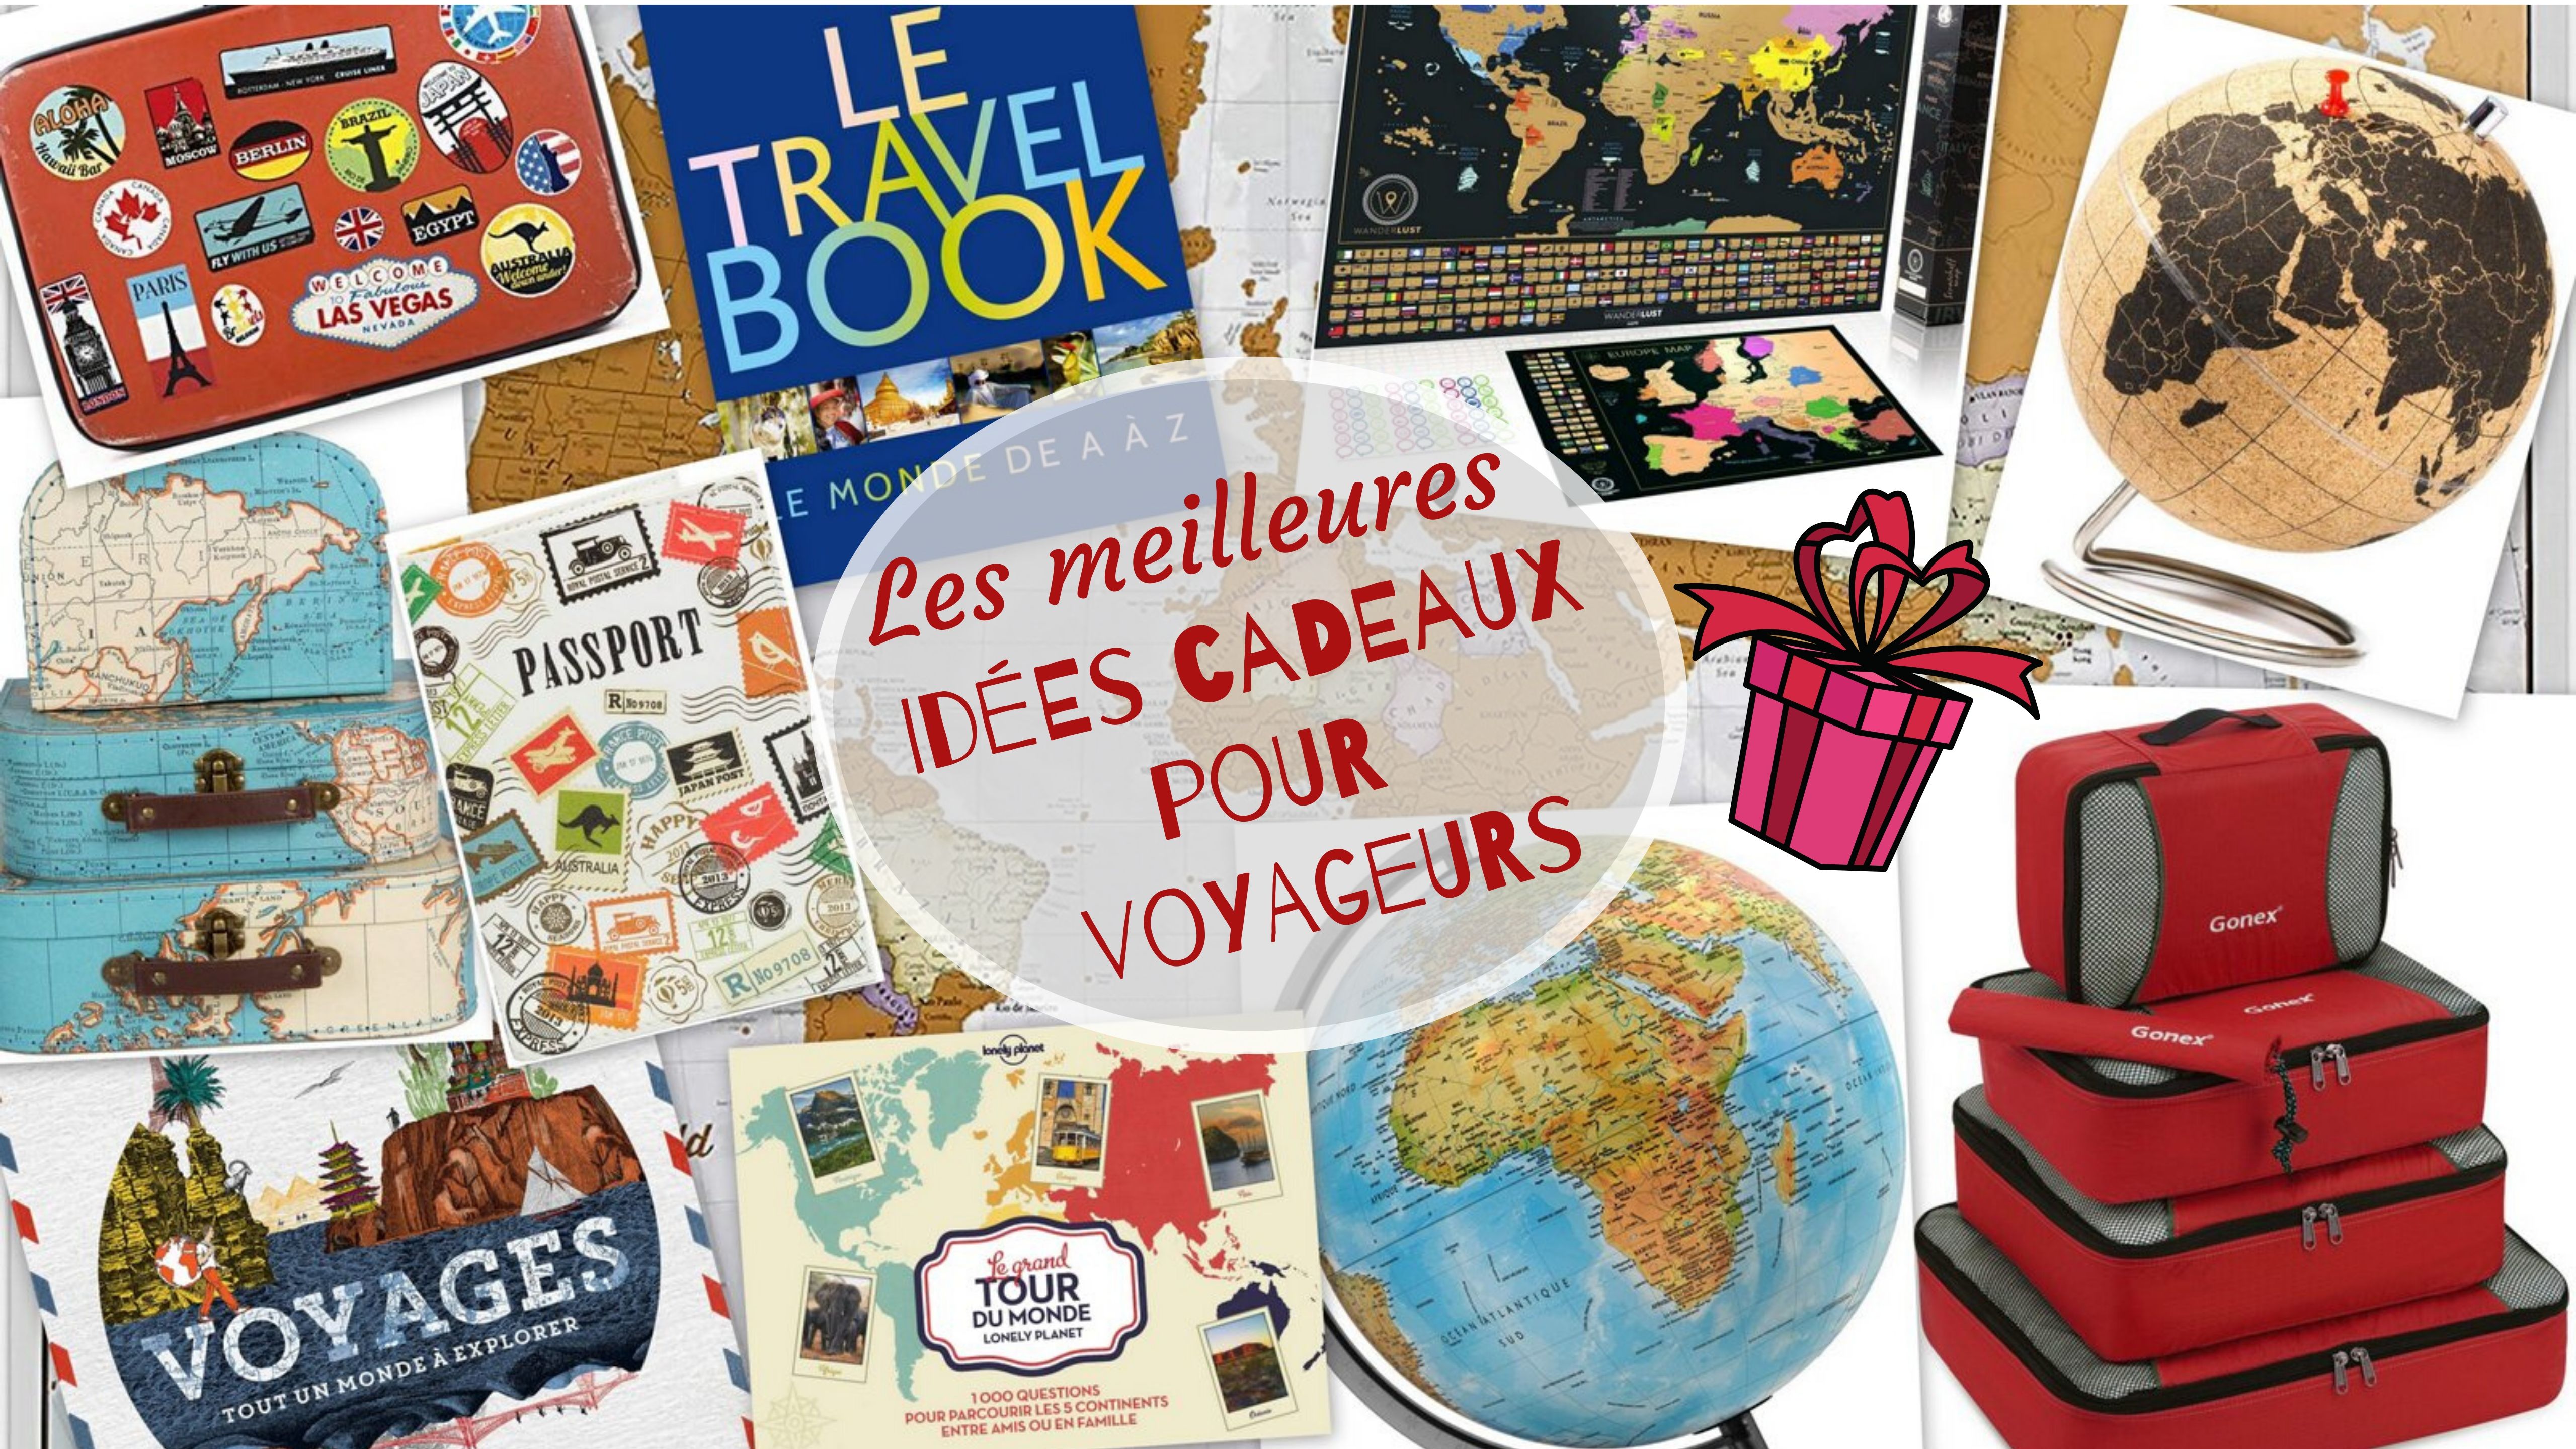 Les meilleures idées cadeaux pour voyageurs - Le Blog de Sarah - Blog de  Voyage